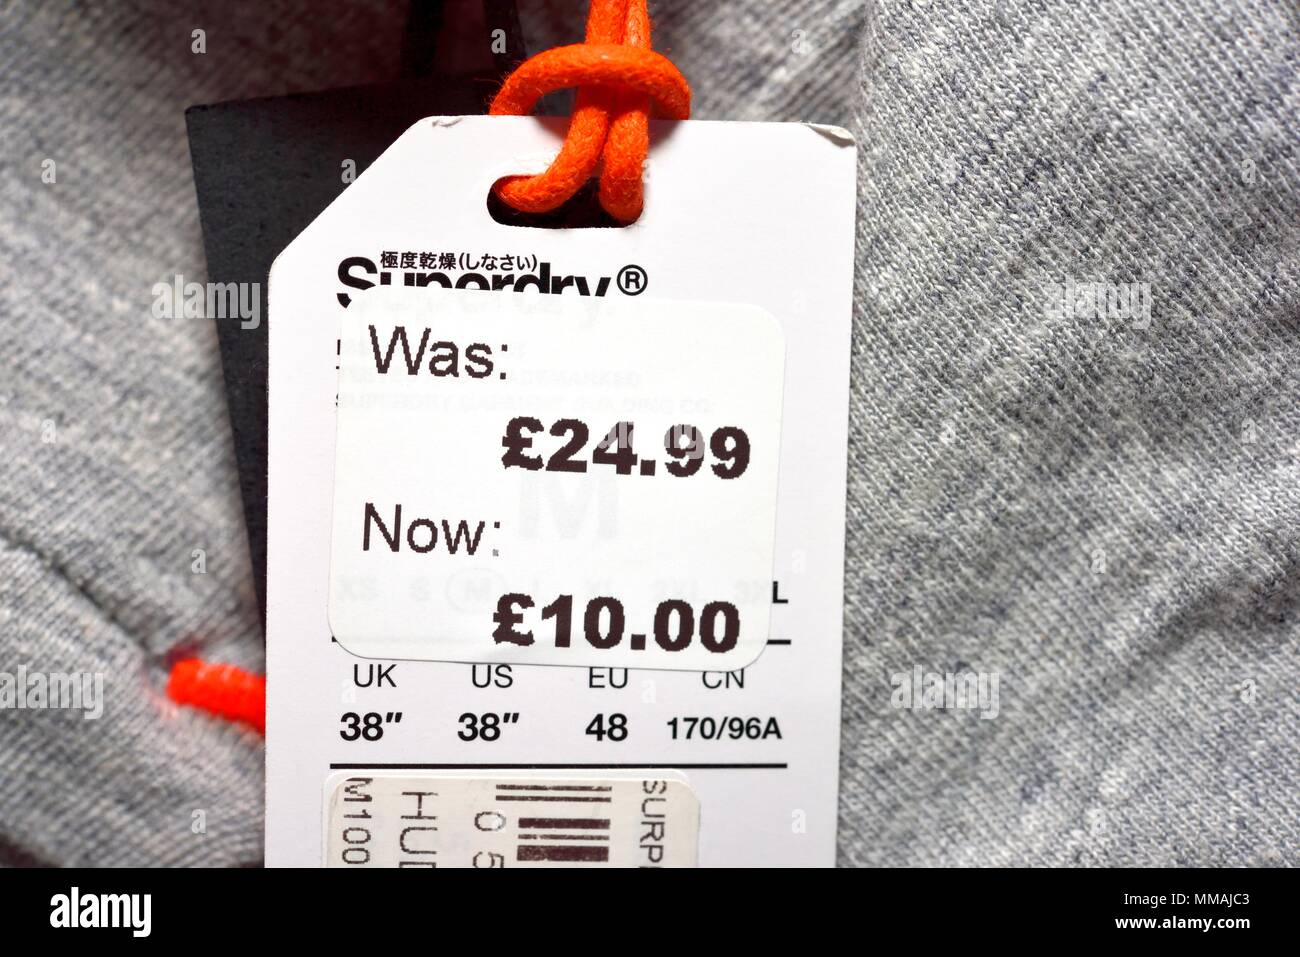 War jetzt reduziert Kleidung Preise label Stockfotografie - Alamy